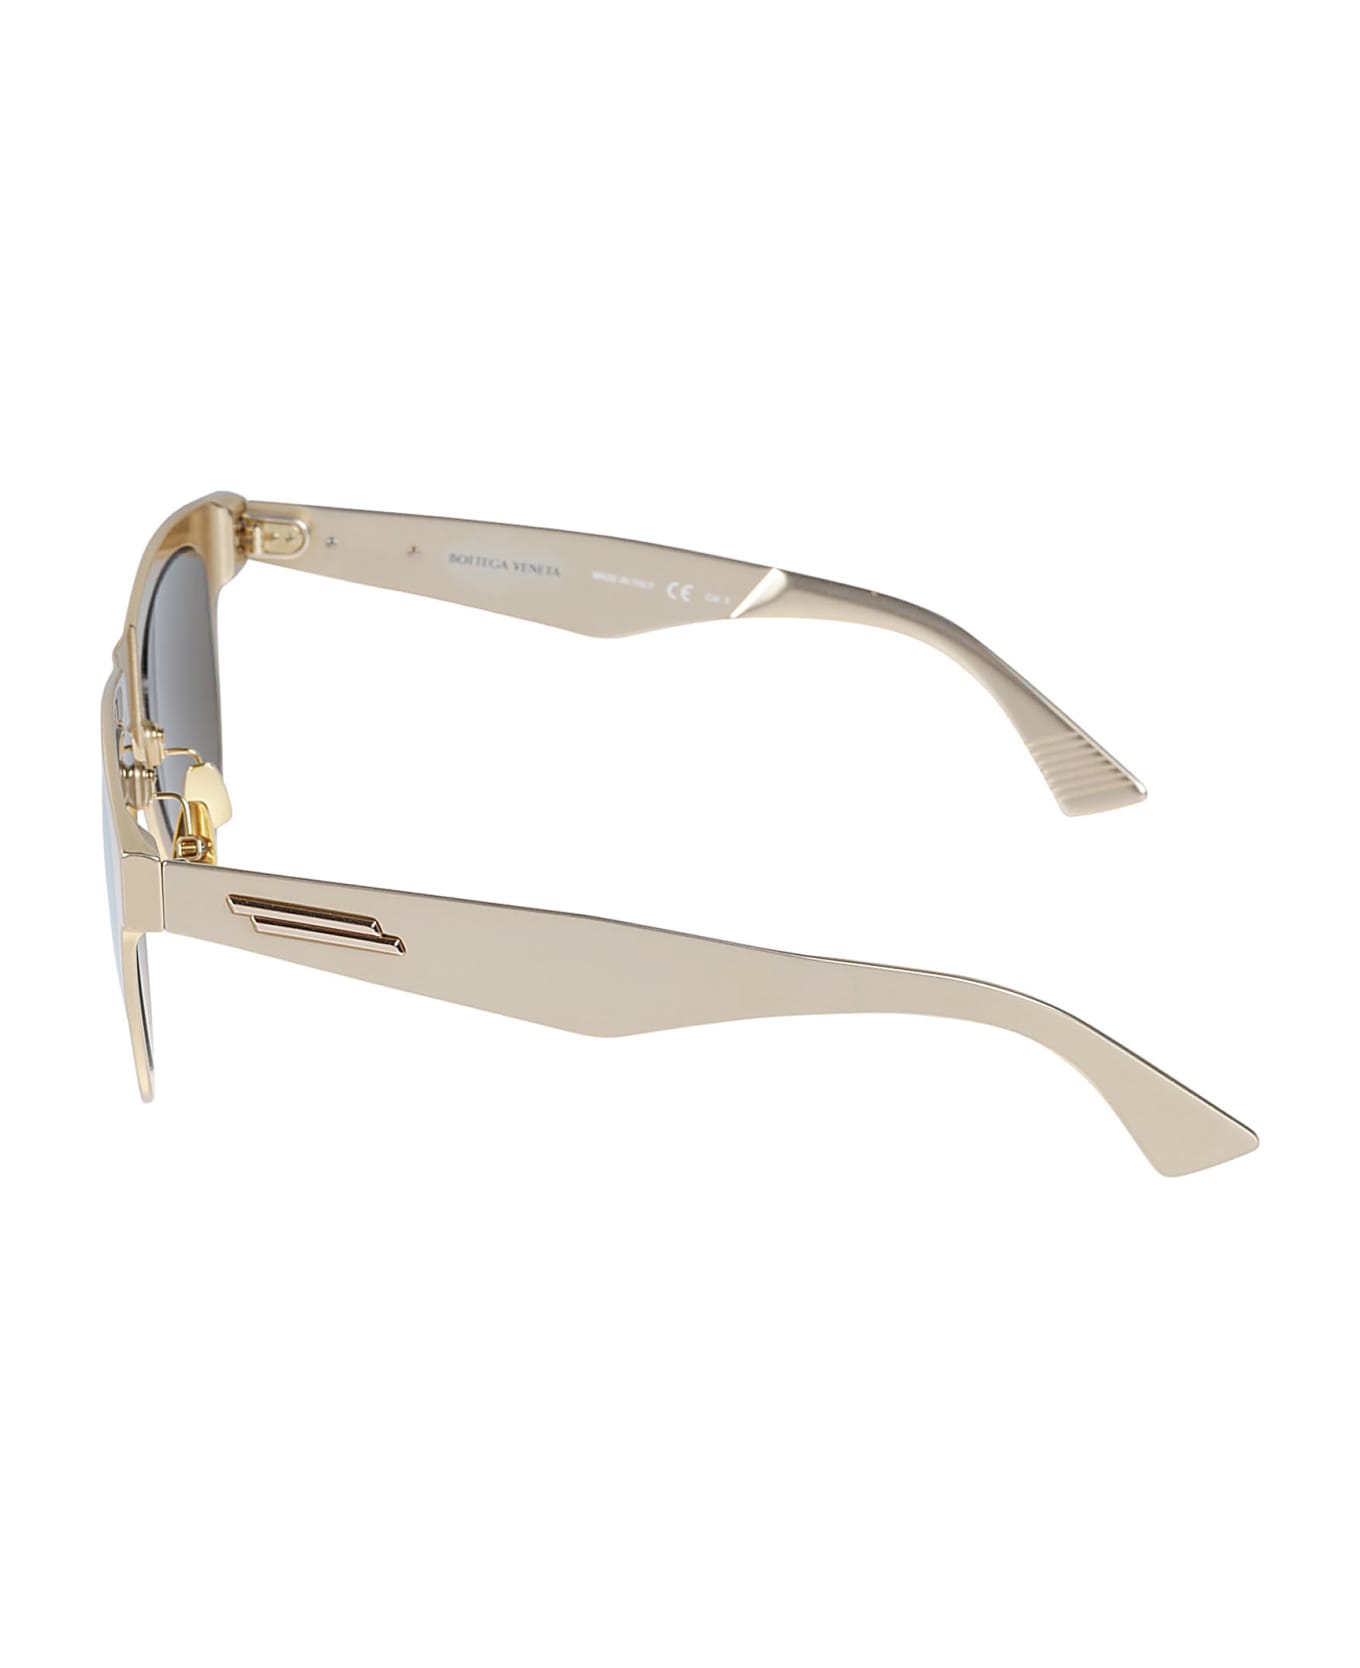 Bottega Veneta Eyewear Wayfarer Sunglasses These - Gold